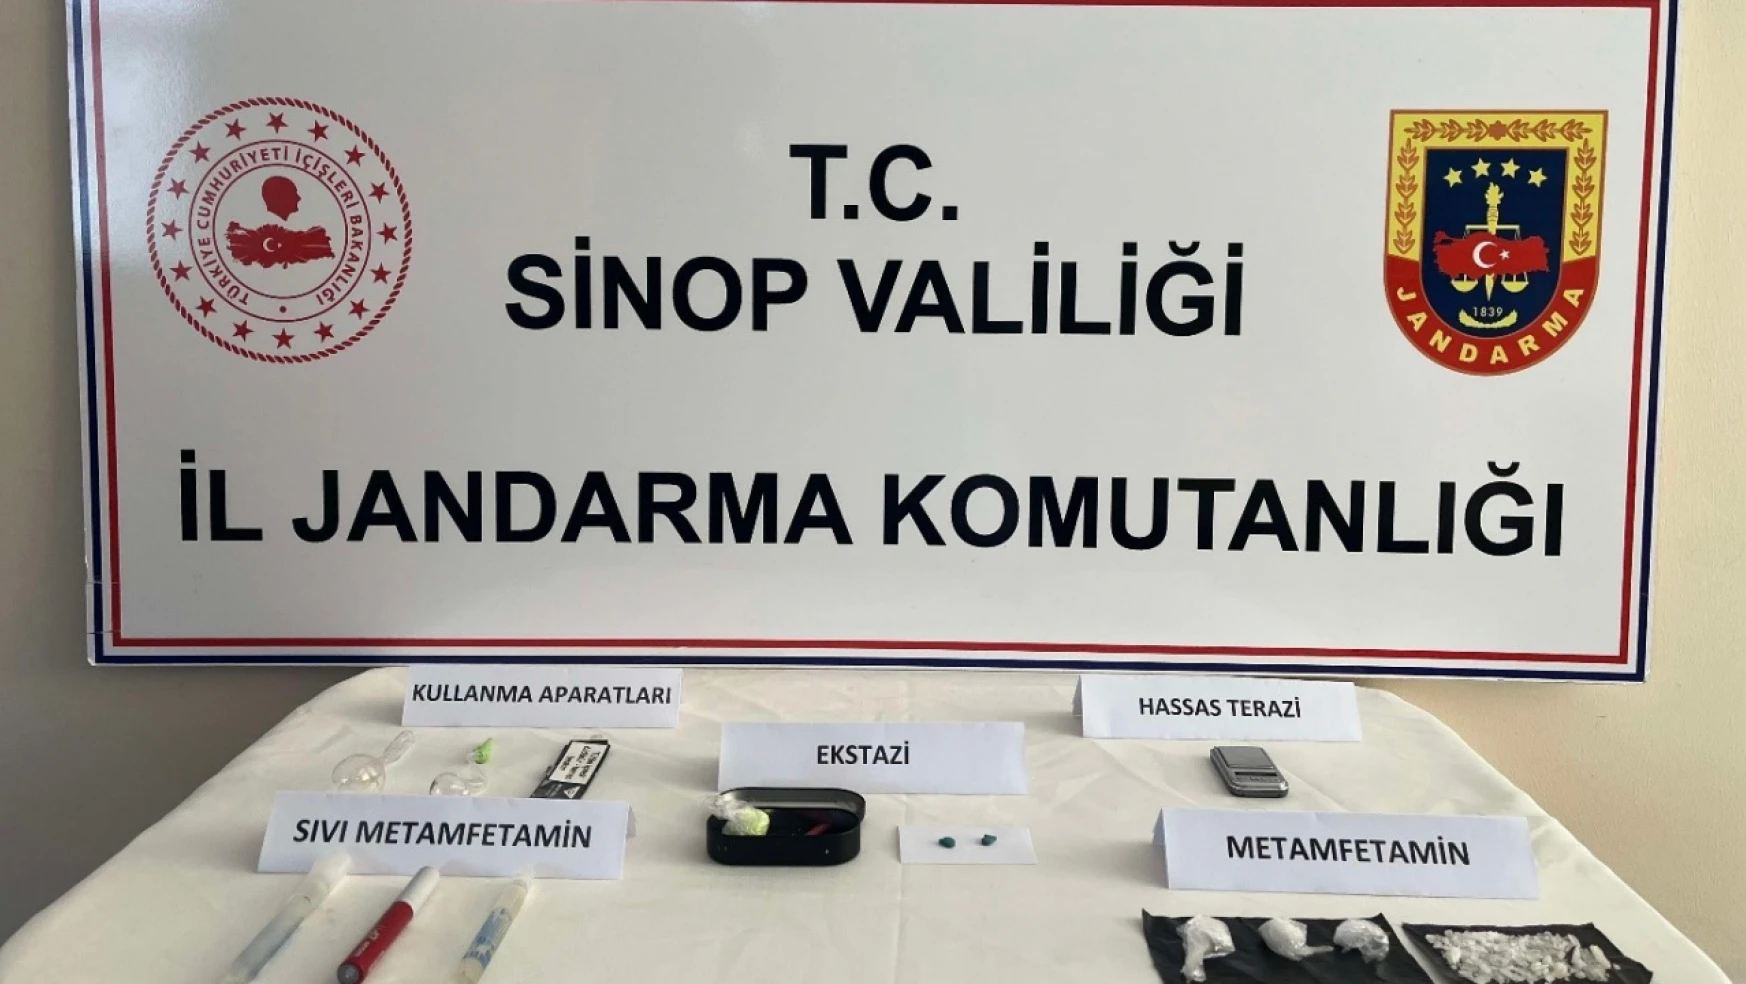 Sinop'ta uyuşturucu operasyonu: 2 gözaltı